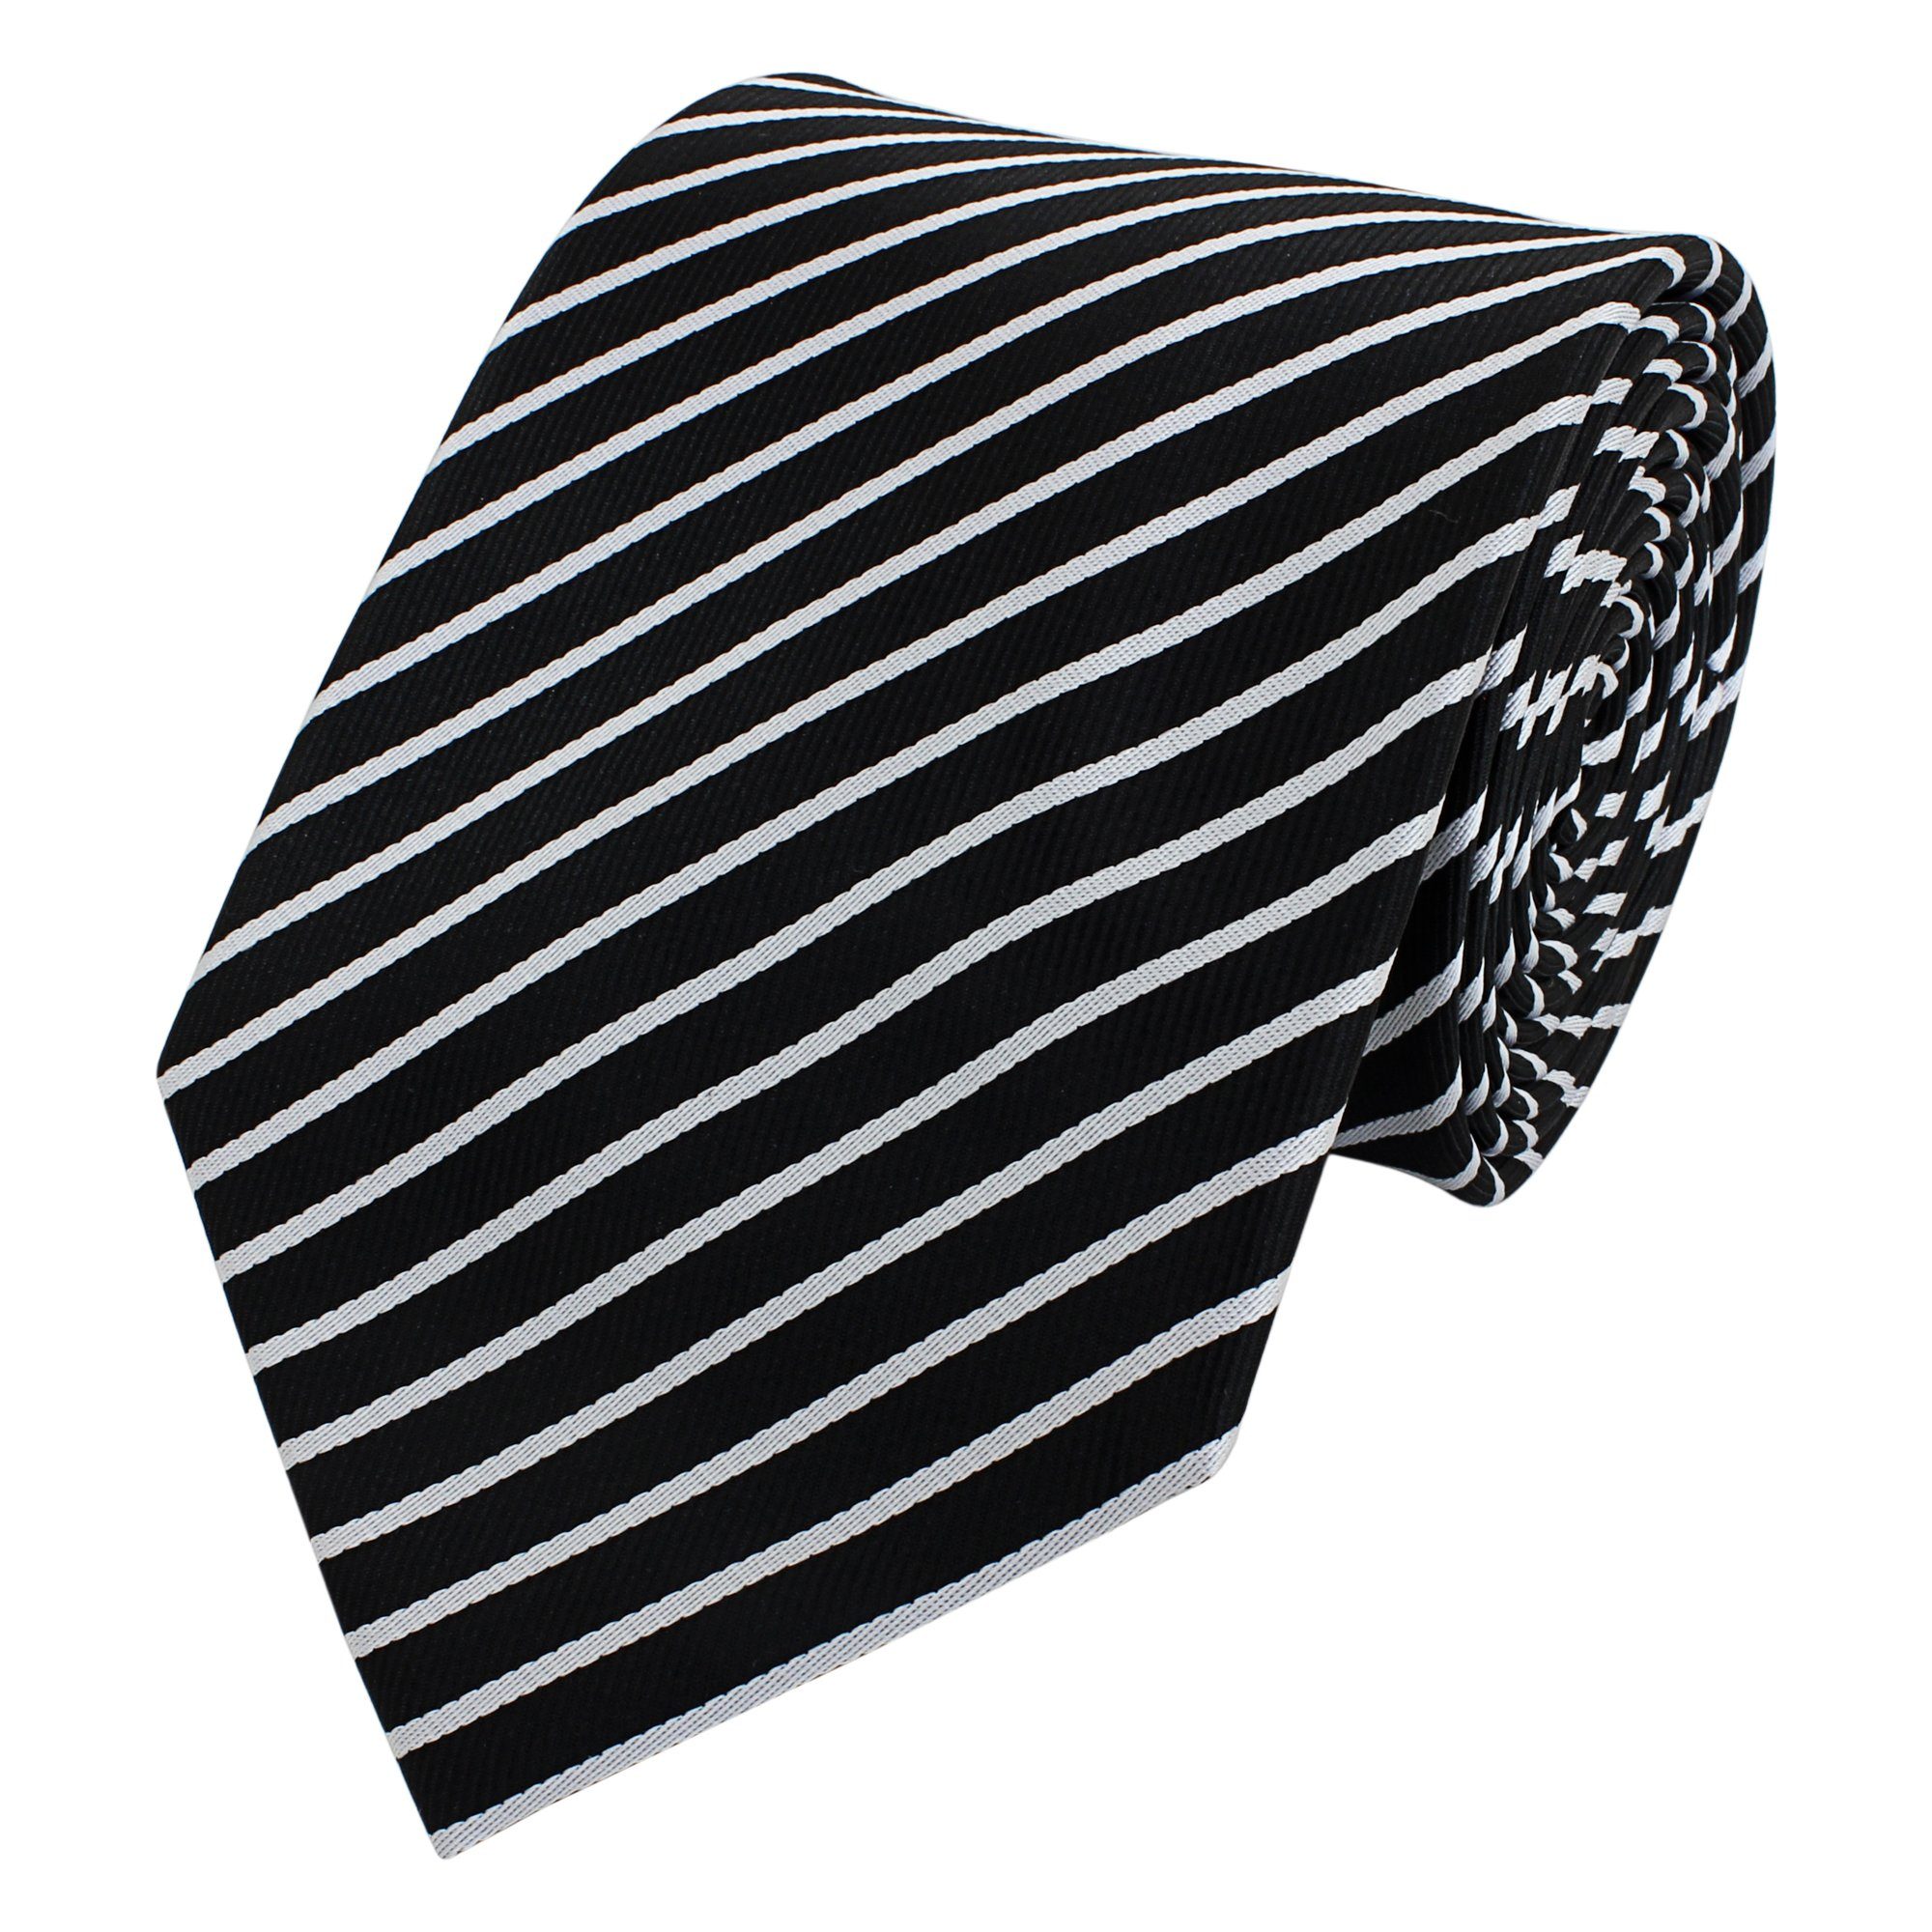 Fabio Farini Krawatte Schwarze Herren Krawatten - dunkle Schlips in 8cm Breite (ohne Box, Gestreift) Breit (8cm), Schwarz/weiße Streifen